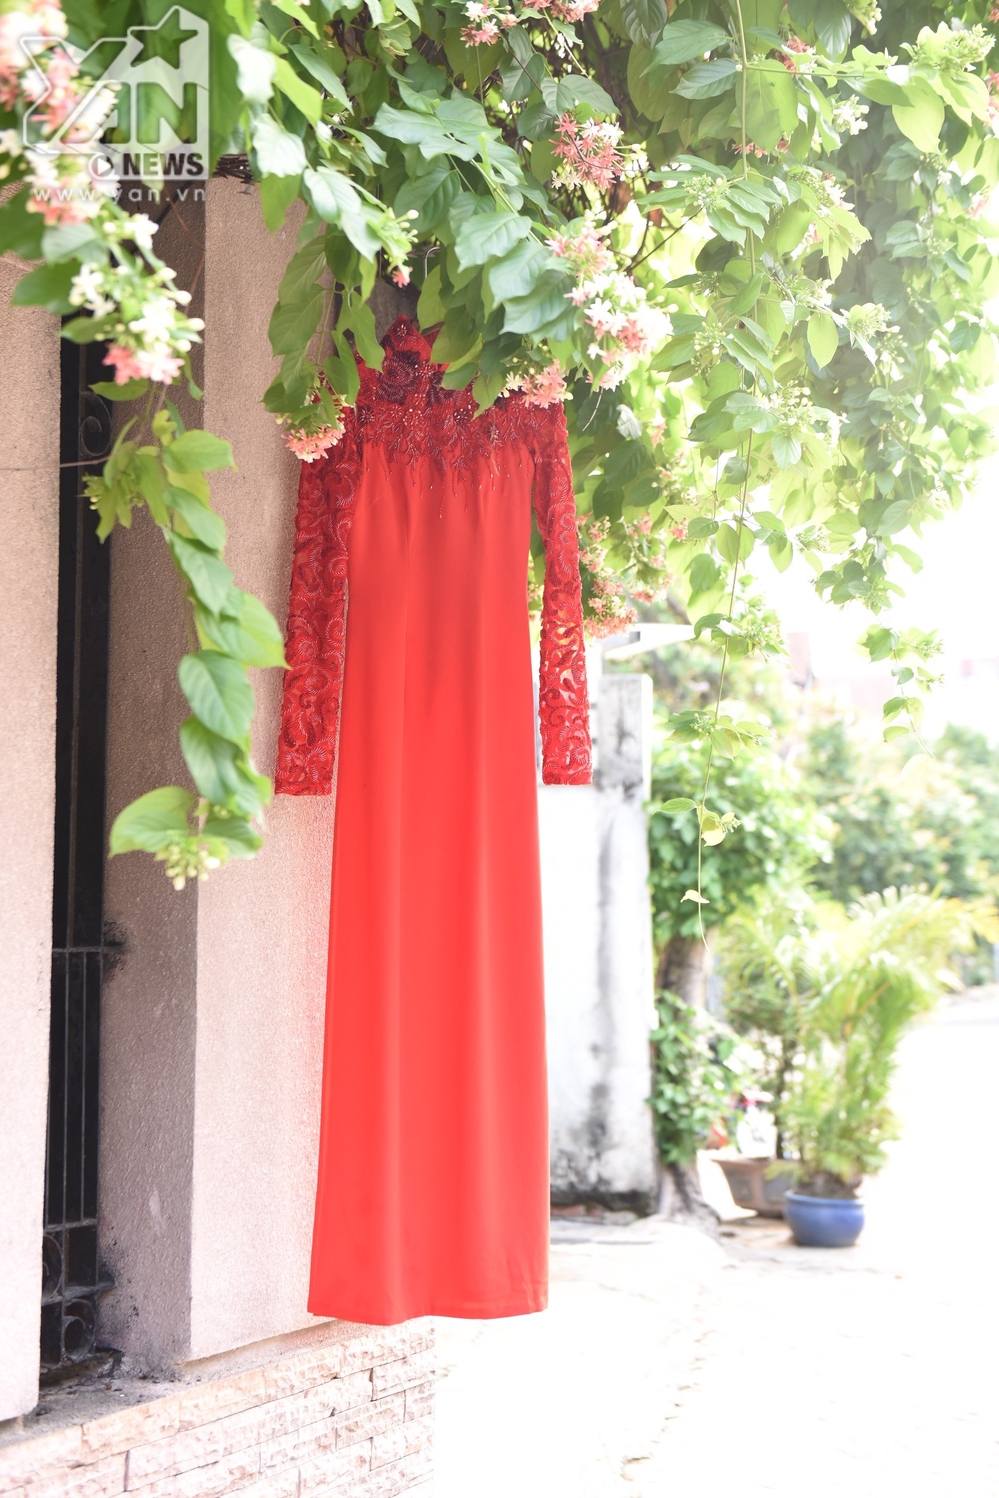  
Chiếc áo dài đỏ rực Sara Lưu sẽ diện về nhà chồng - Tin sao Viet - Tin tuc sao Viet - Scandal sao Viet - Tin tuc cua Sao - Tin cua Sao